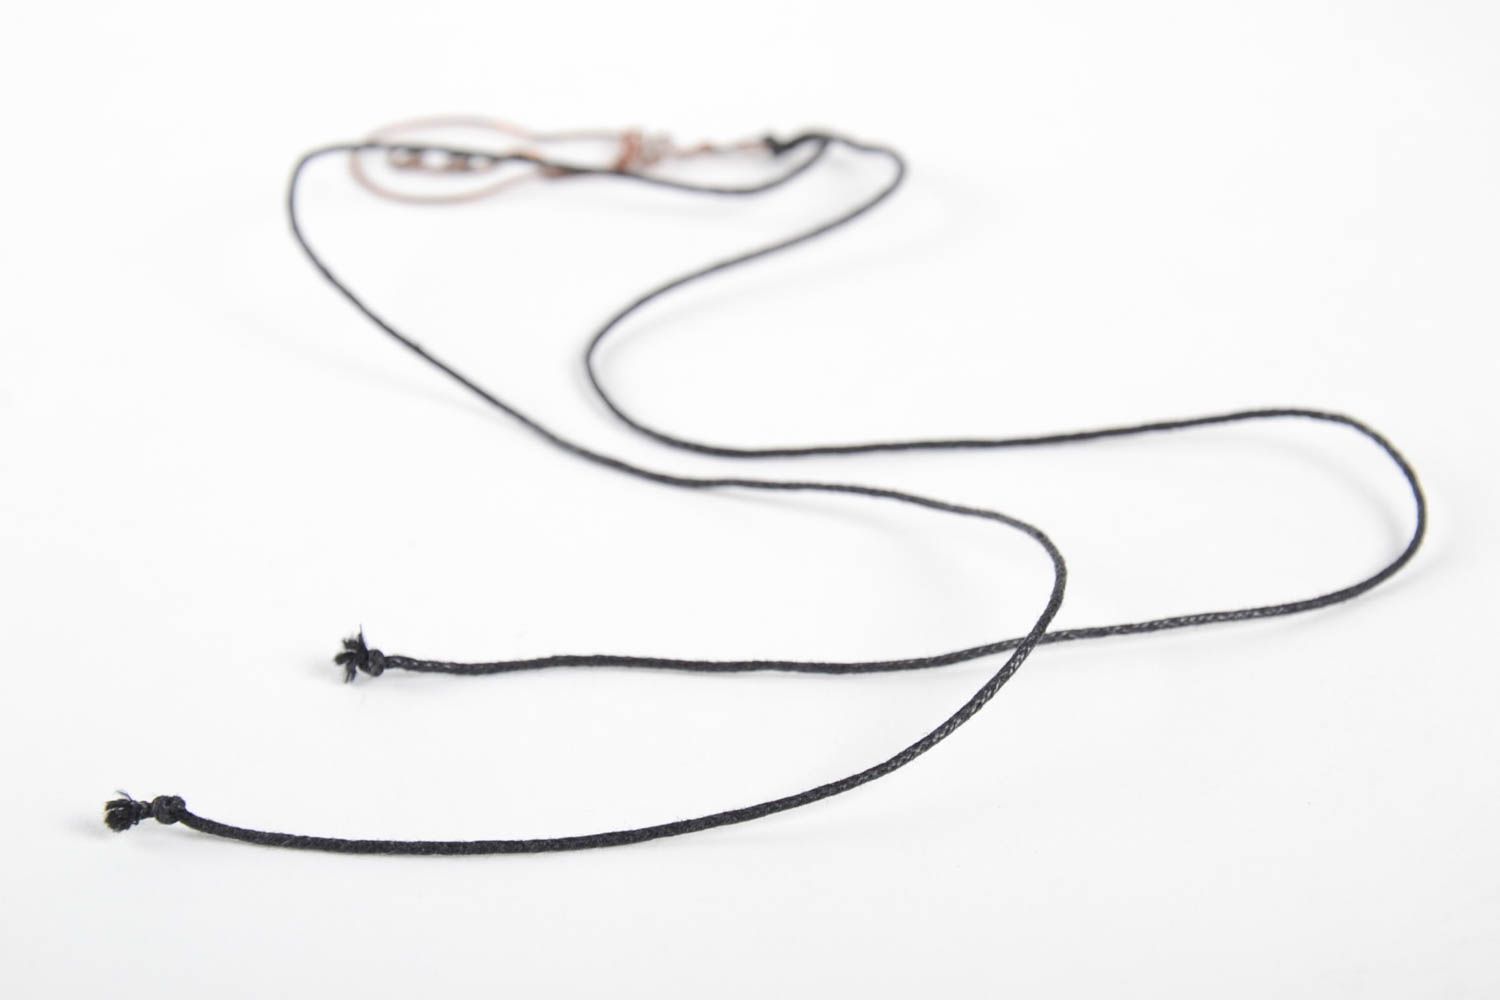 Handmade pendant copper pendant wire wrap pendant wire wrap accessories for girl photo 5